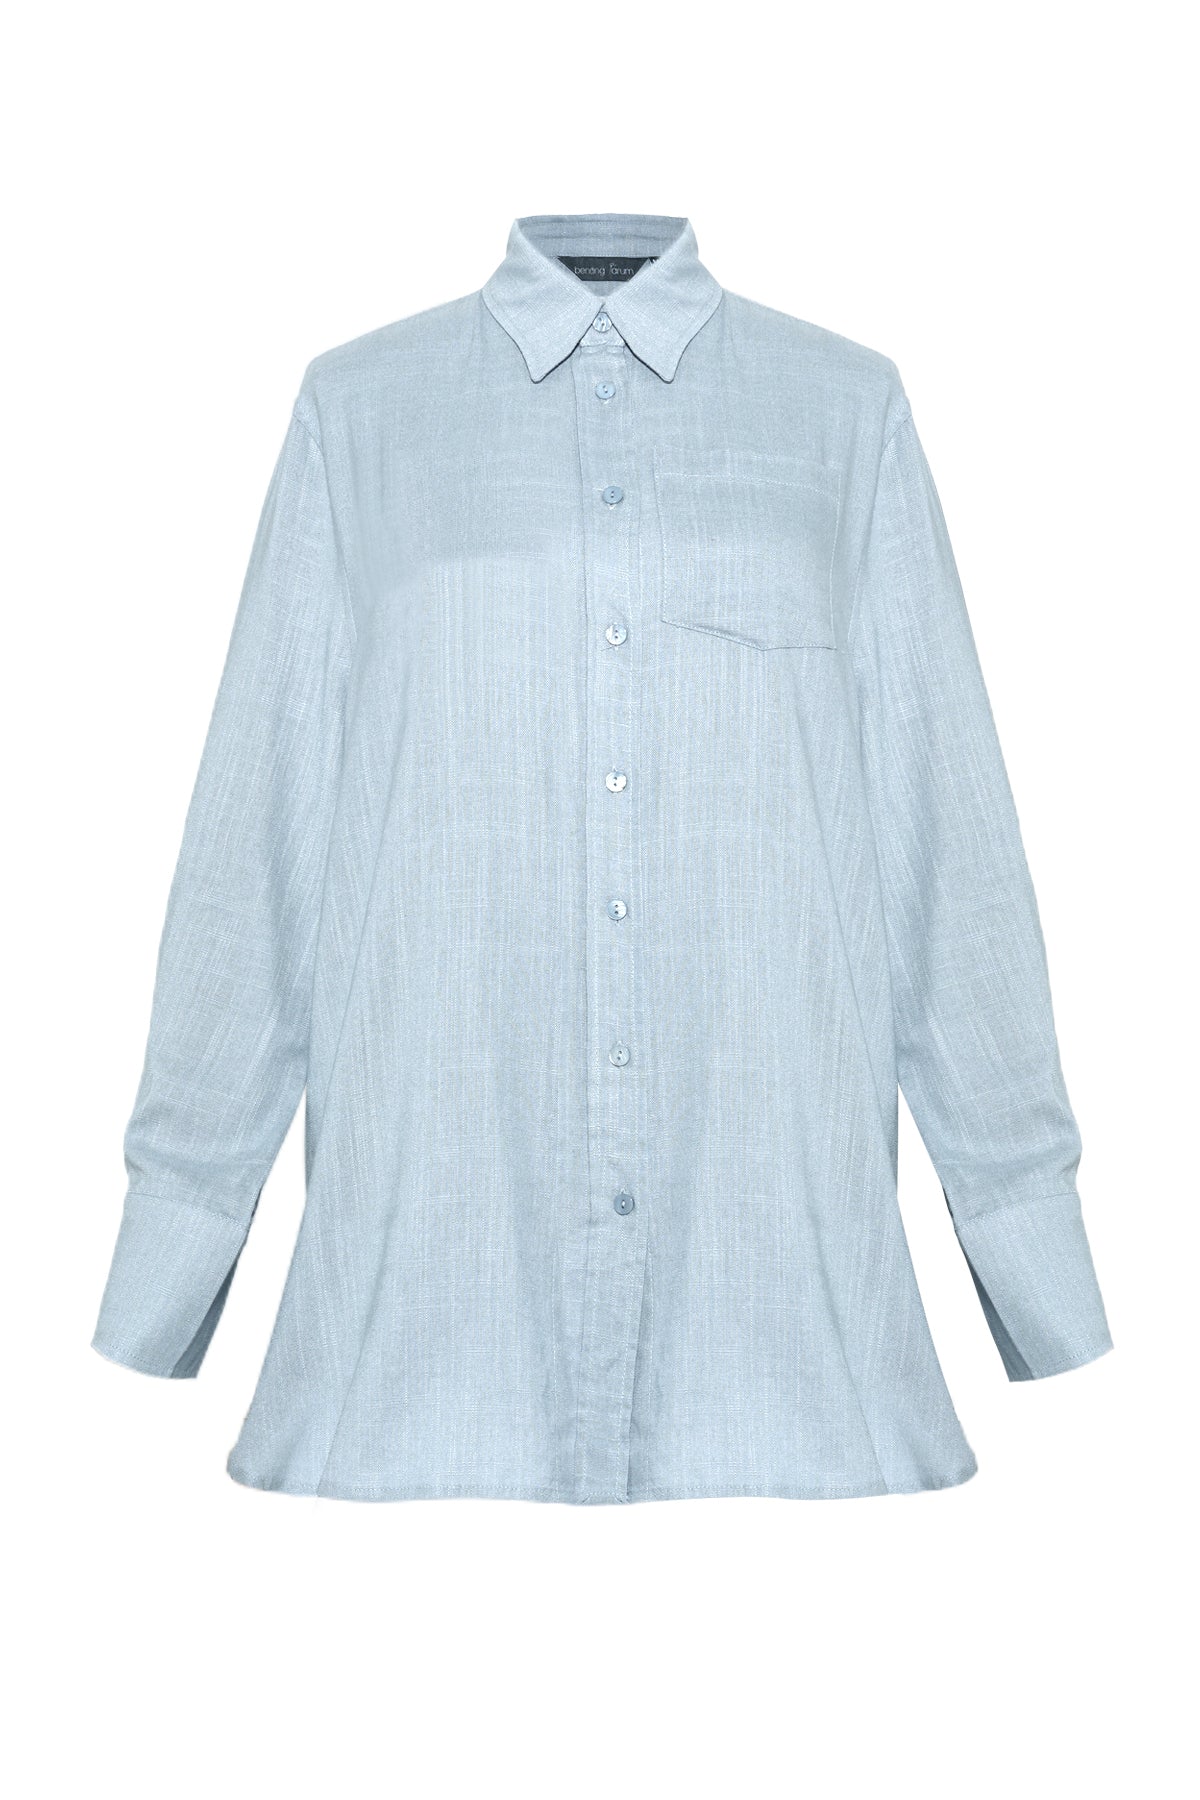 Linen Pocket Shirt - Powder Blue